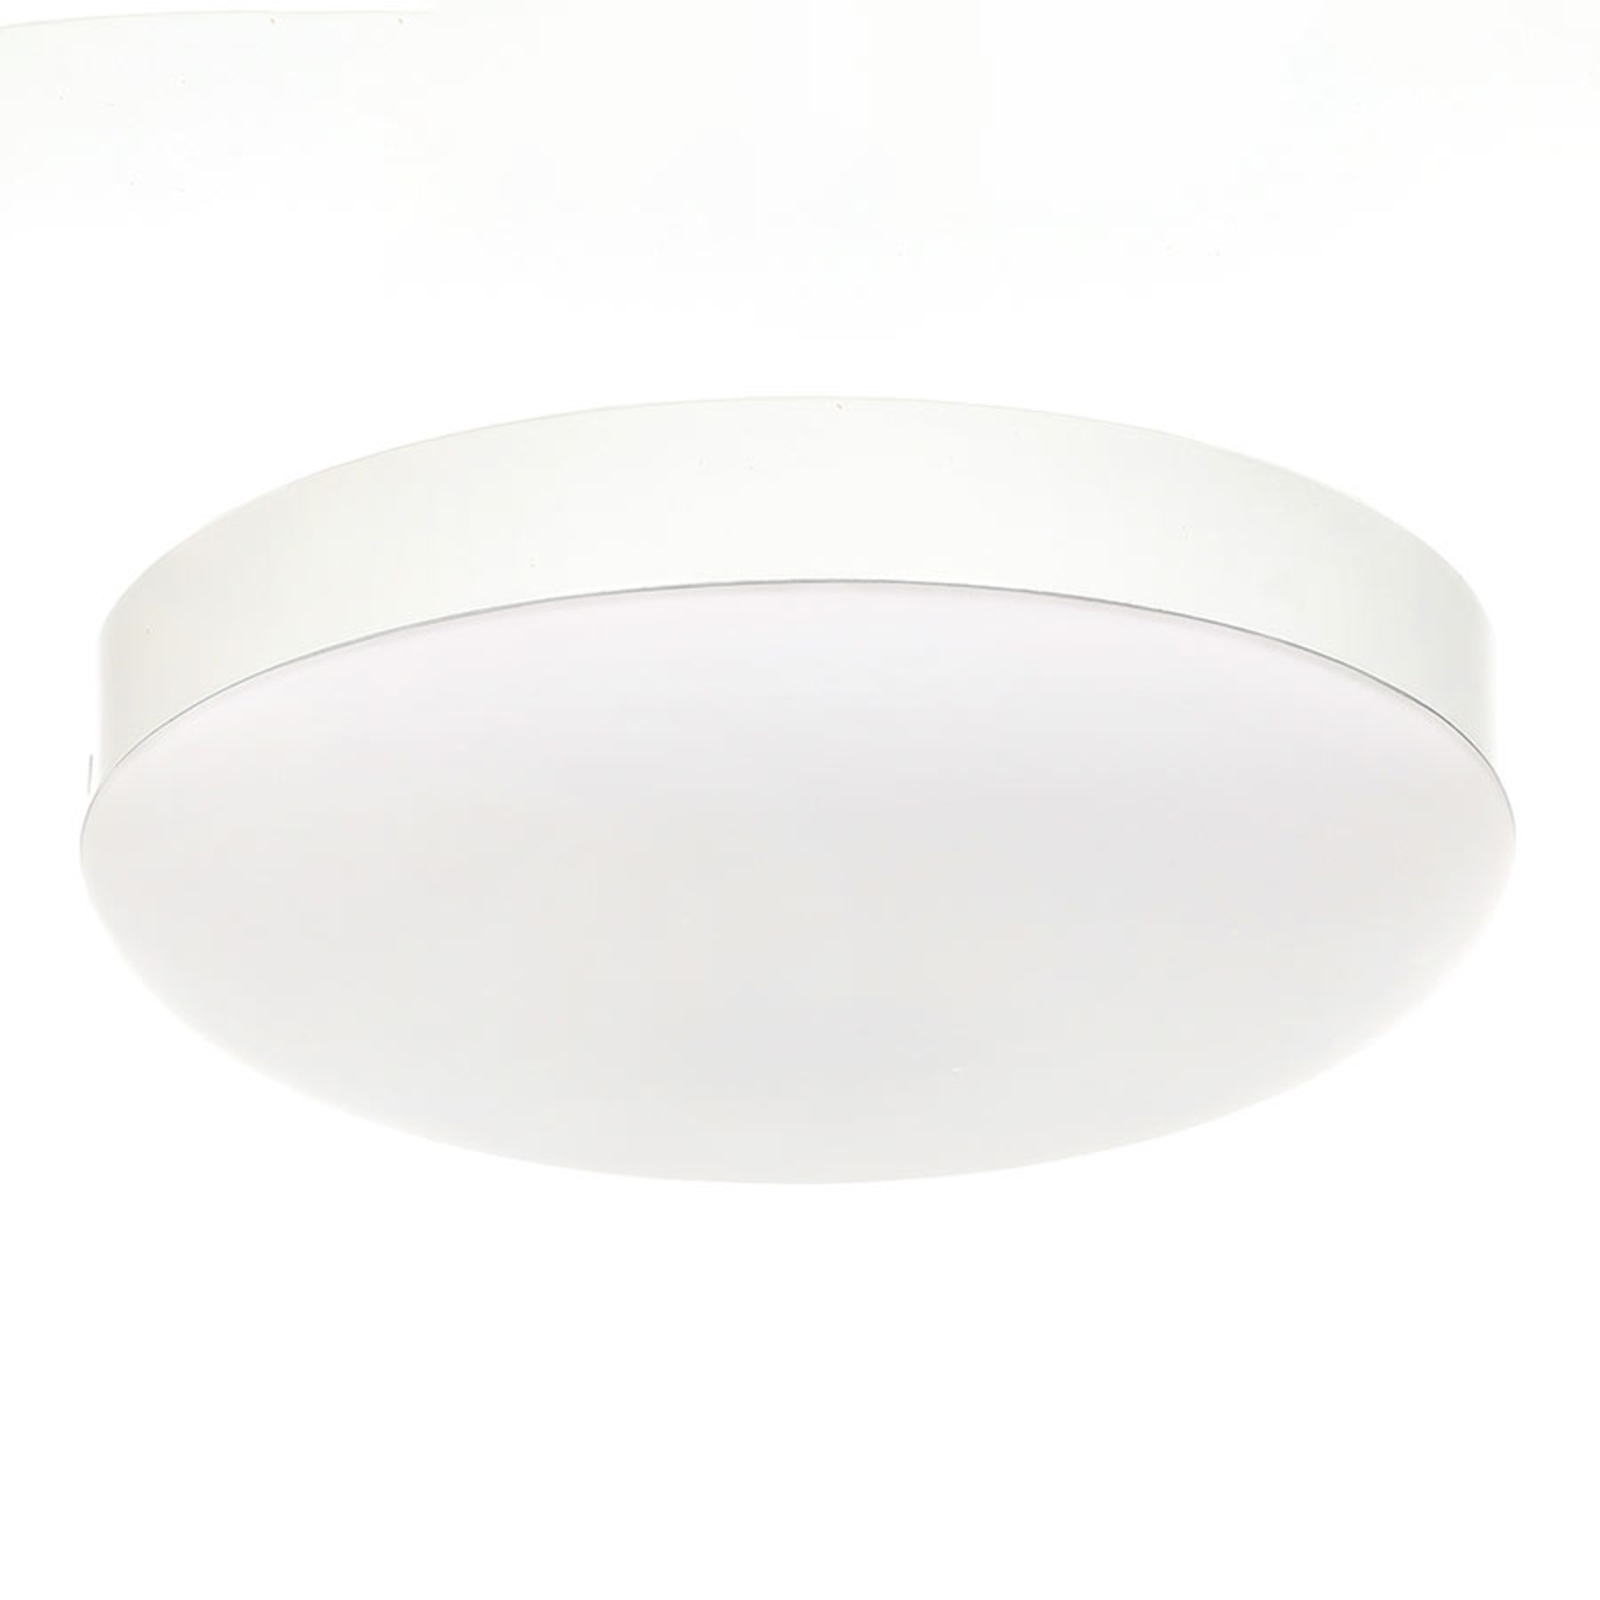 Lisä-LED-valaisin Eco Concept, valkoinen